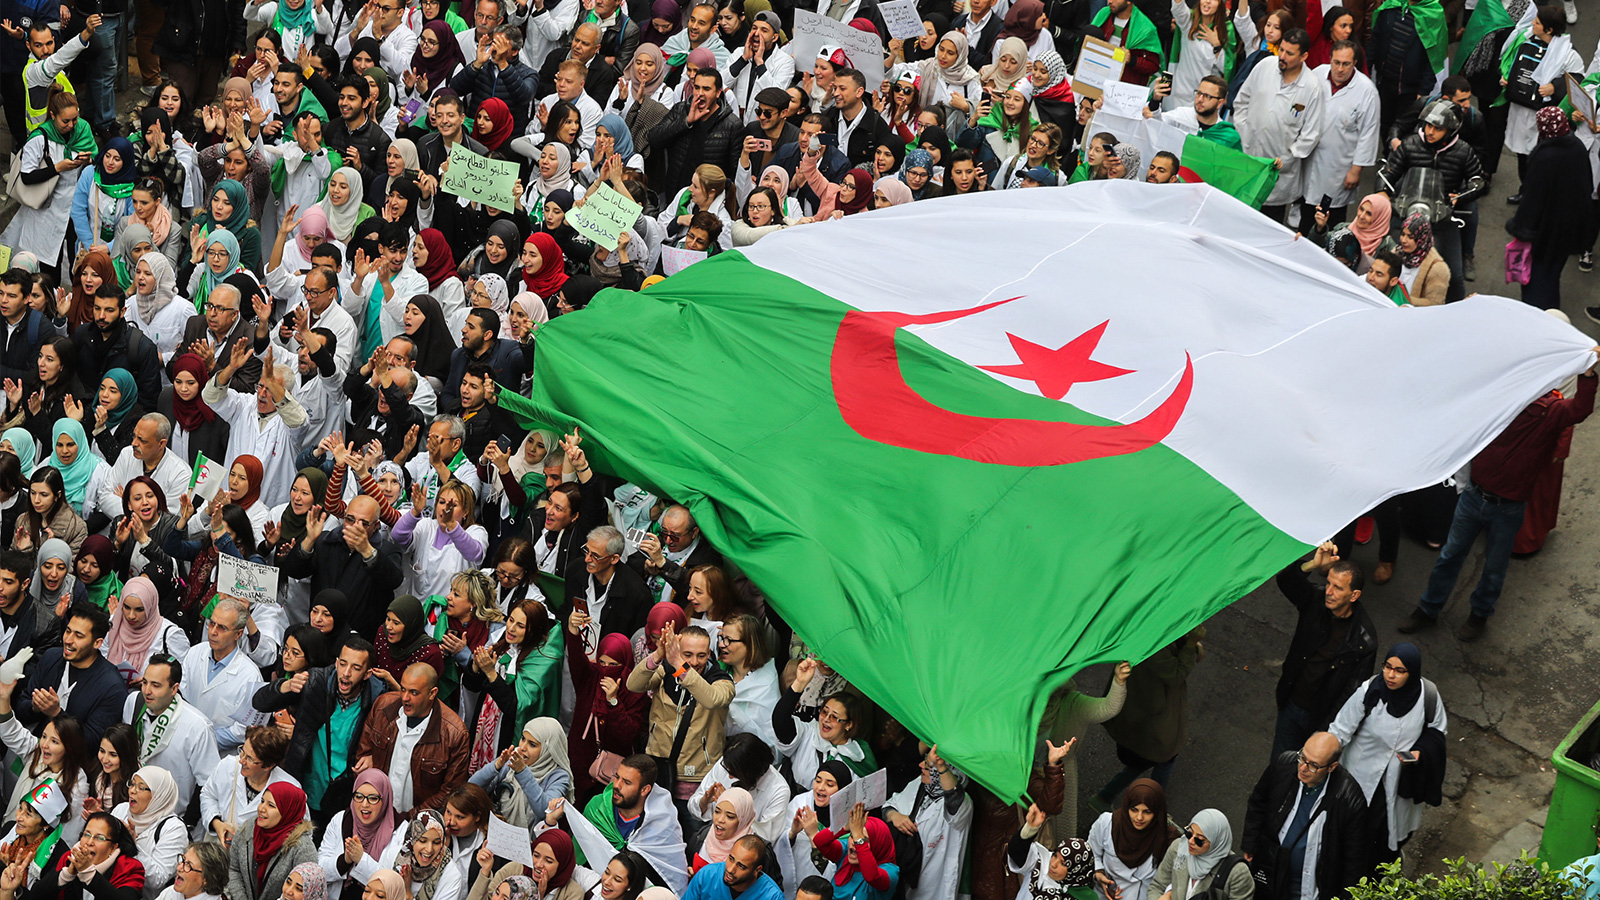 ‪حراك شعبي كبير تشهده الجزائر‬ حراك شعبي كبير تشهده الجزائر (الجزيرة)